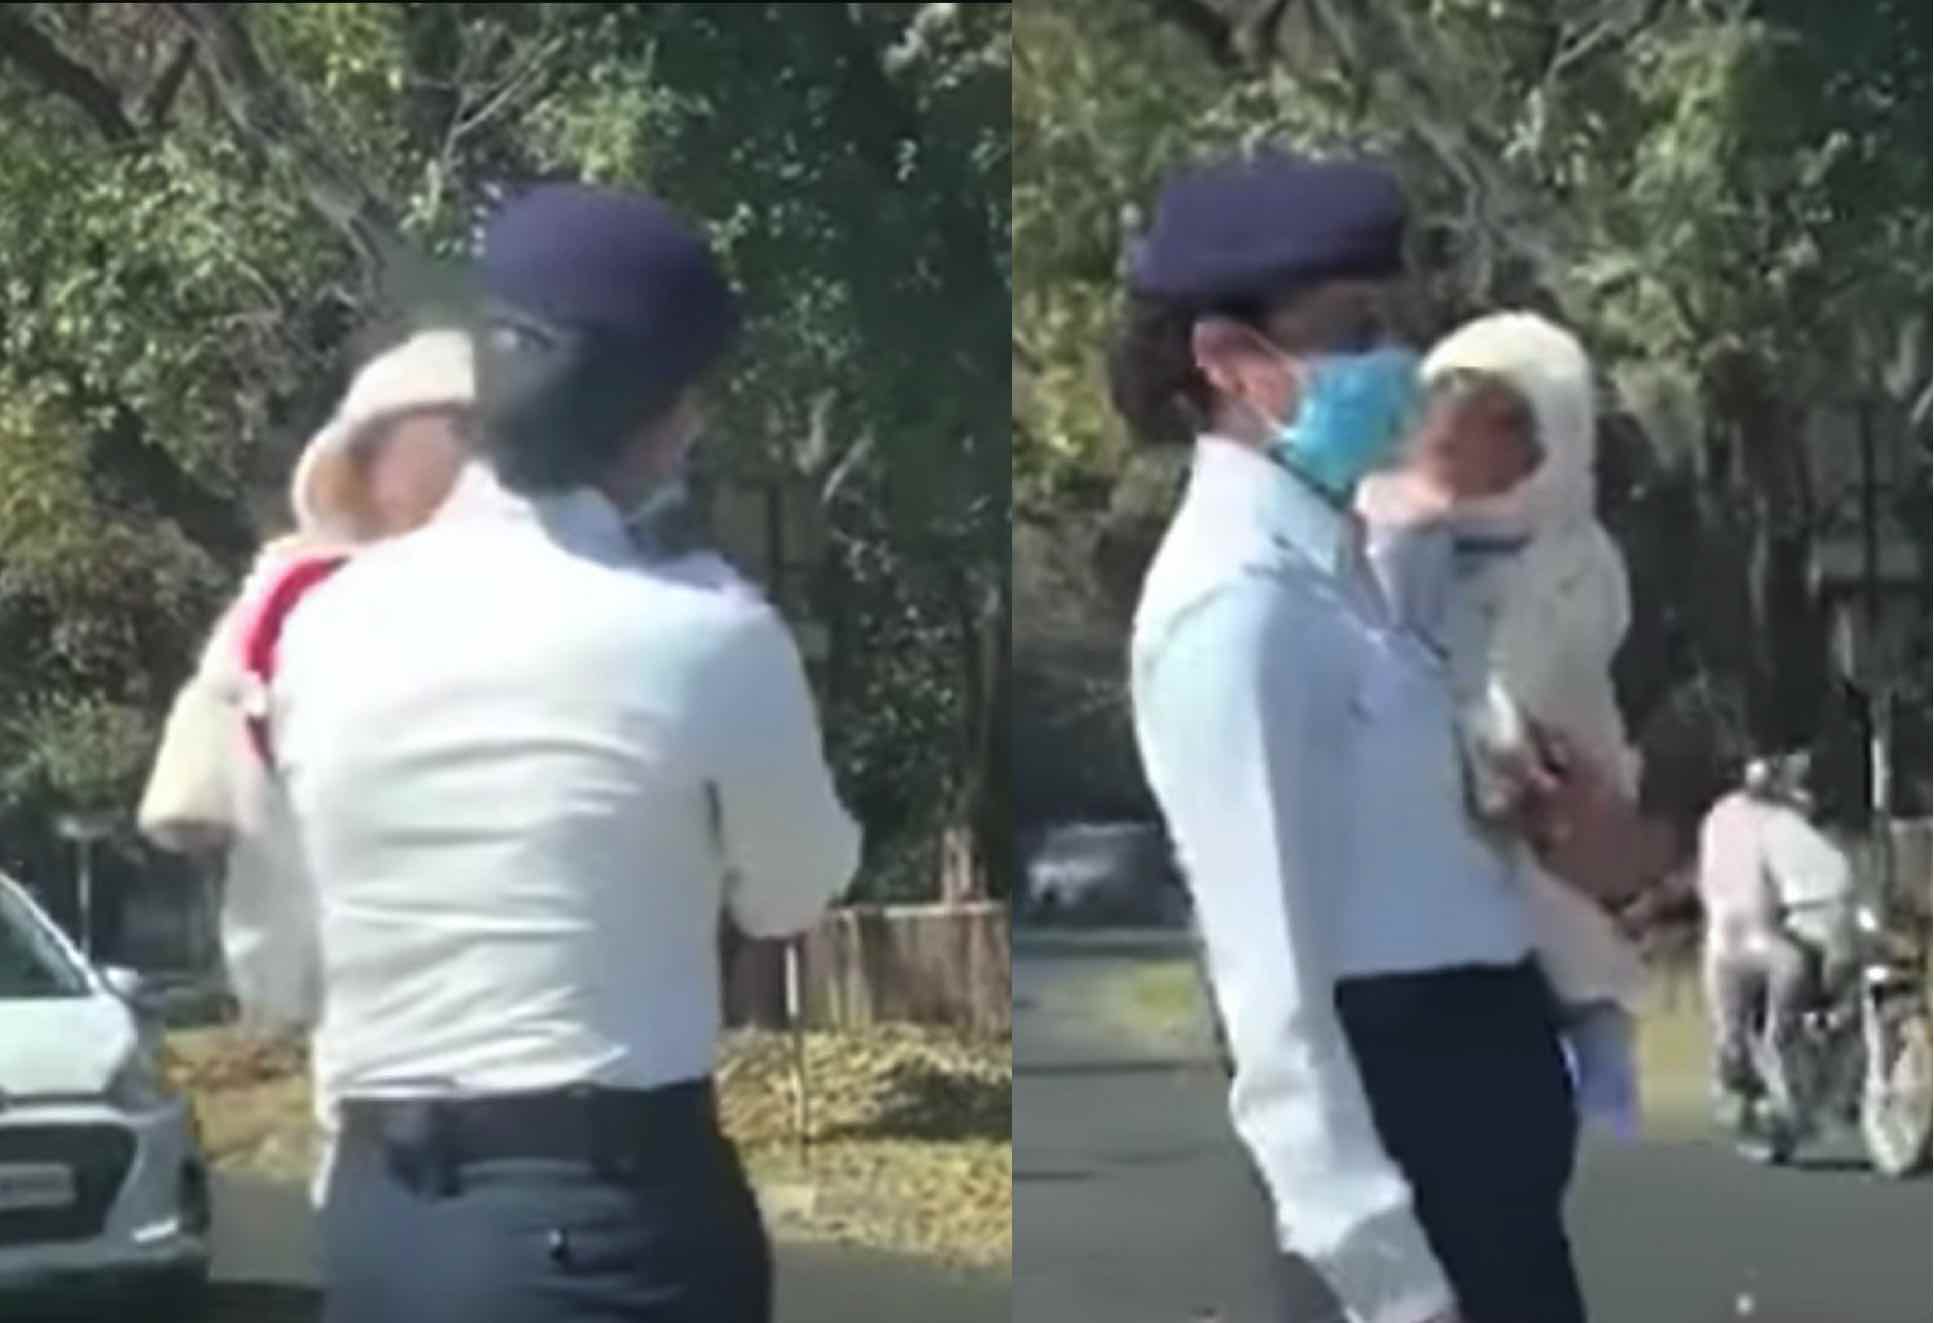 Polis Wanita Terpaksa Jaga Lalu Lintas Sambil Mendukung Anaknya Yang Masih Kecil